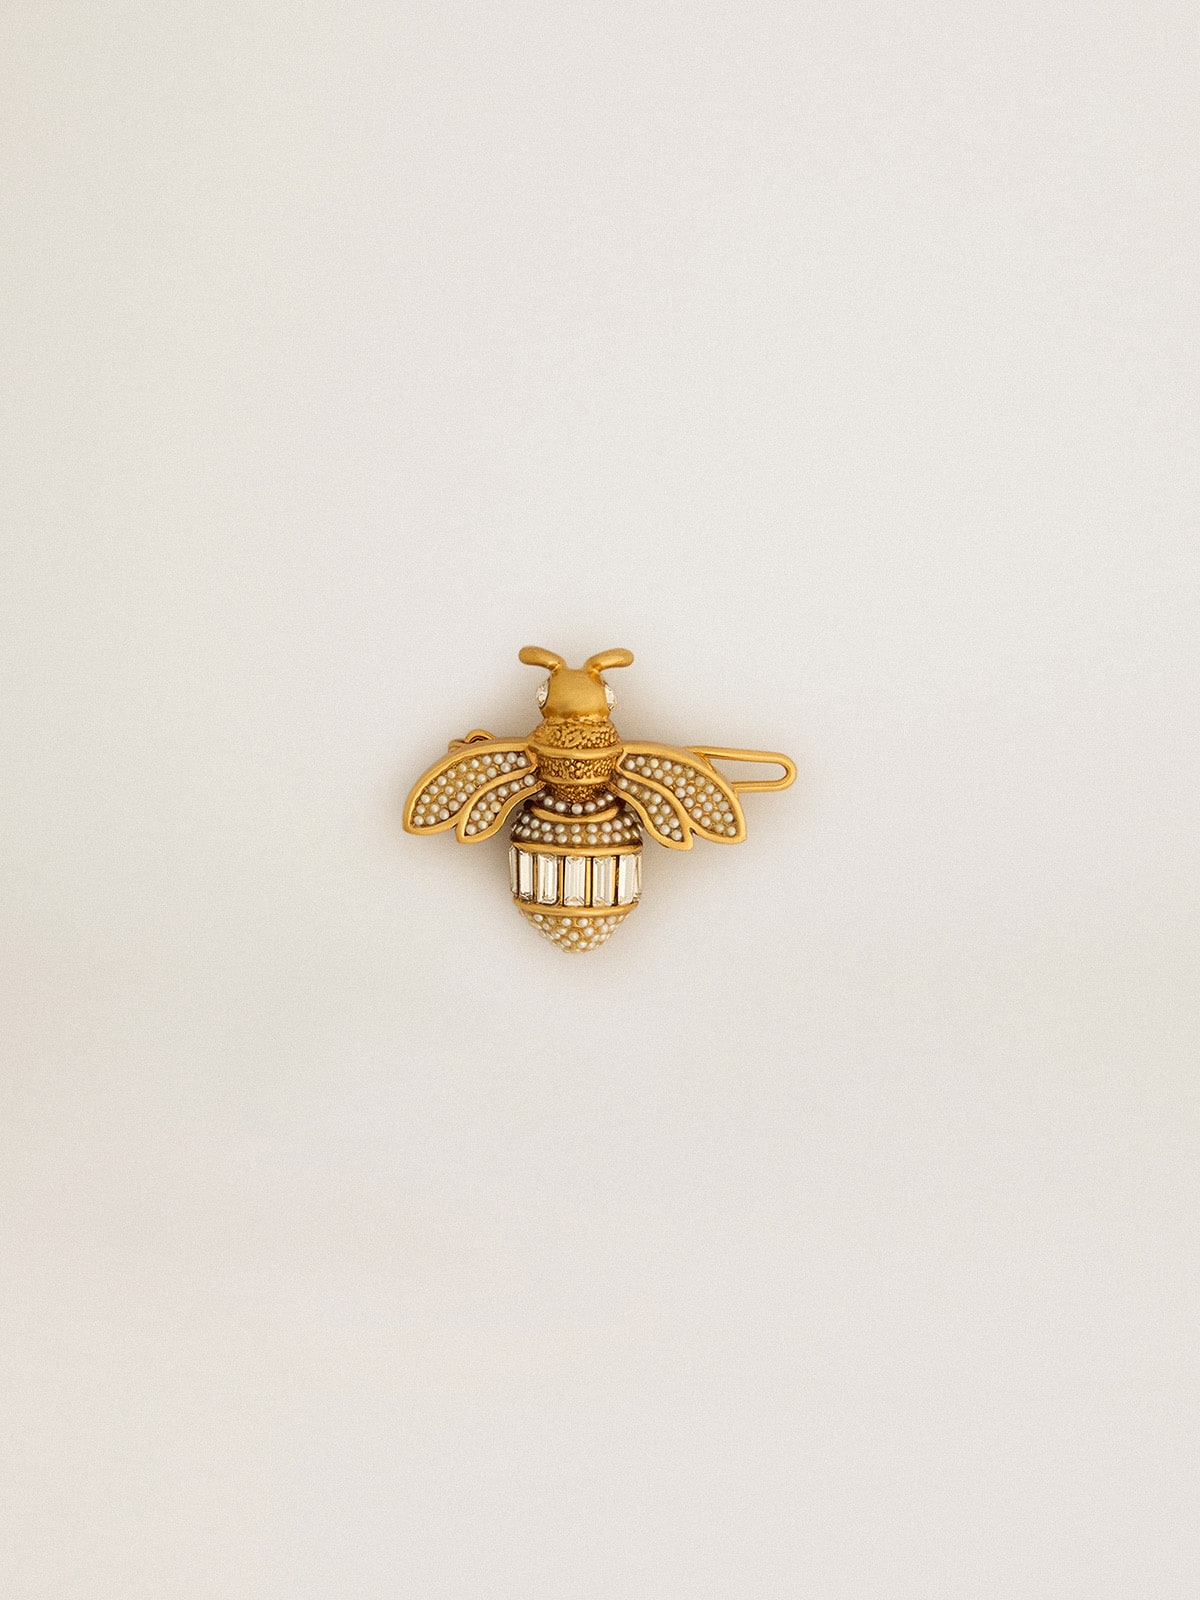 Golden Goose - Fermoirs pour lacets en forme d’abeille or ancien avec cristaux in 